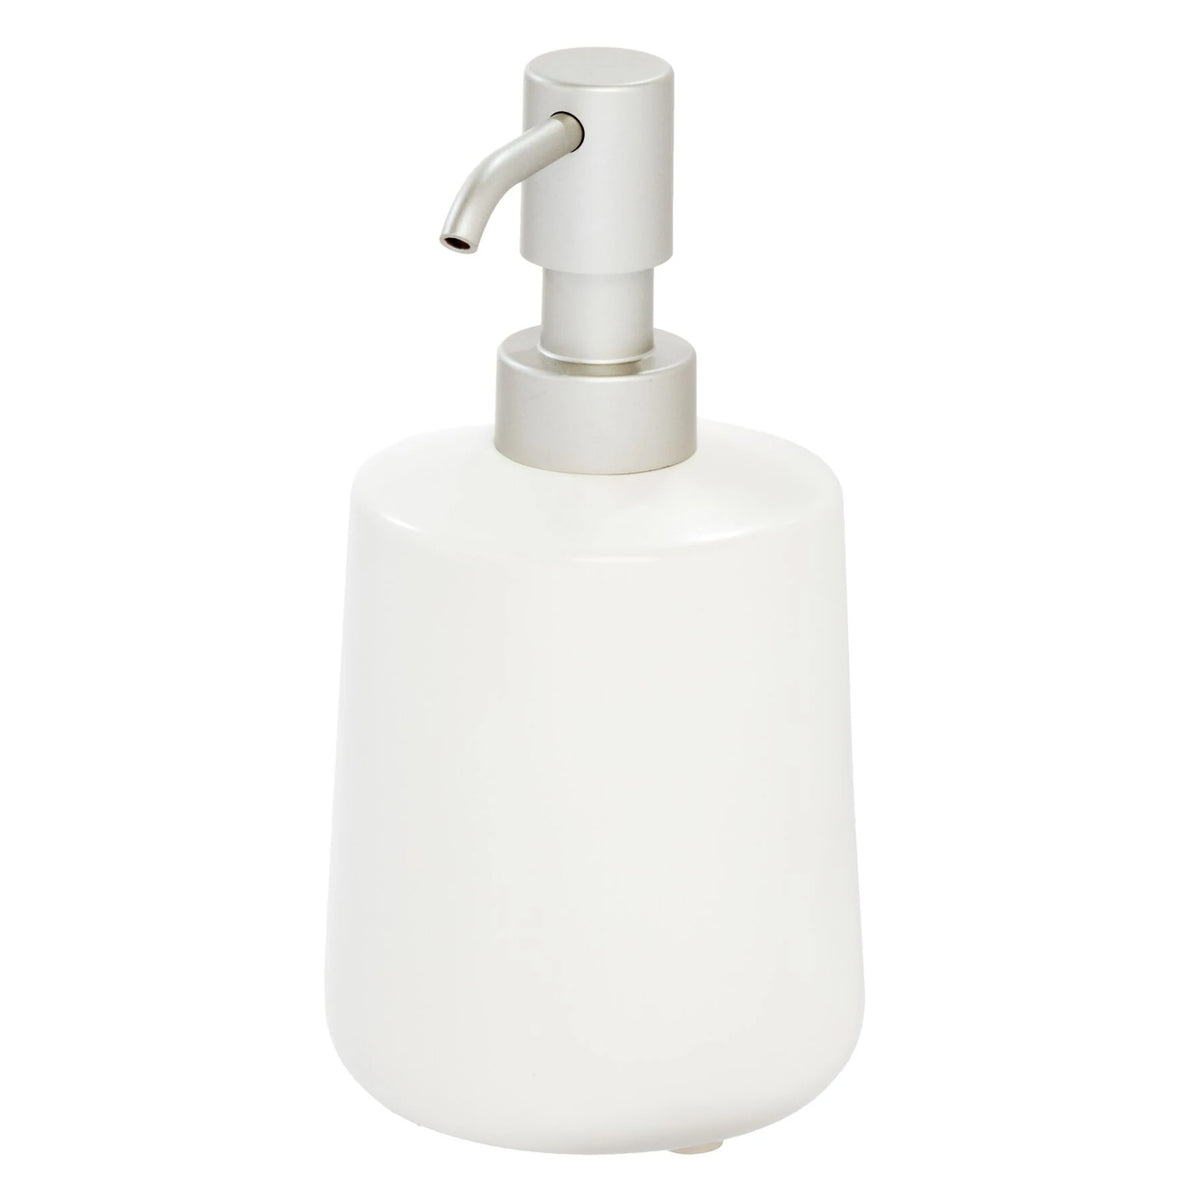 Liquid soap dispenser, White